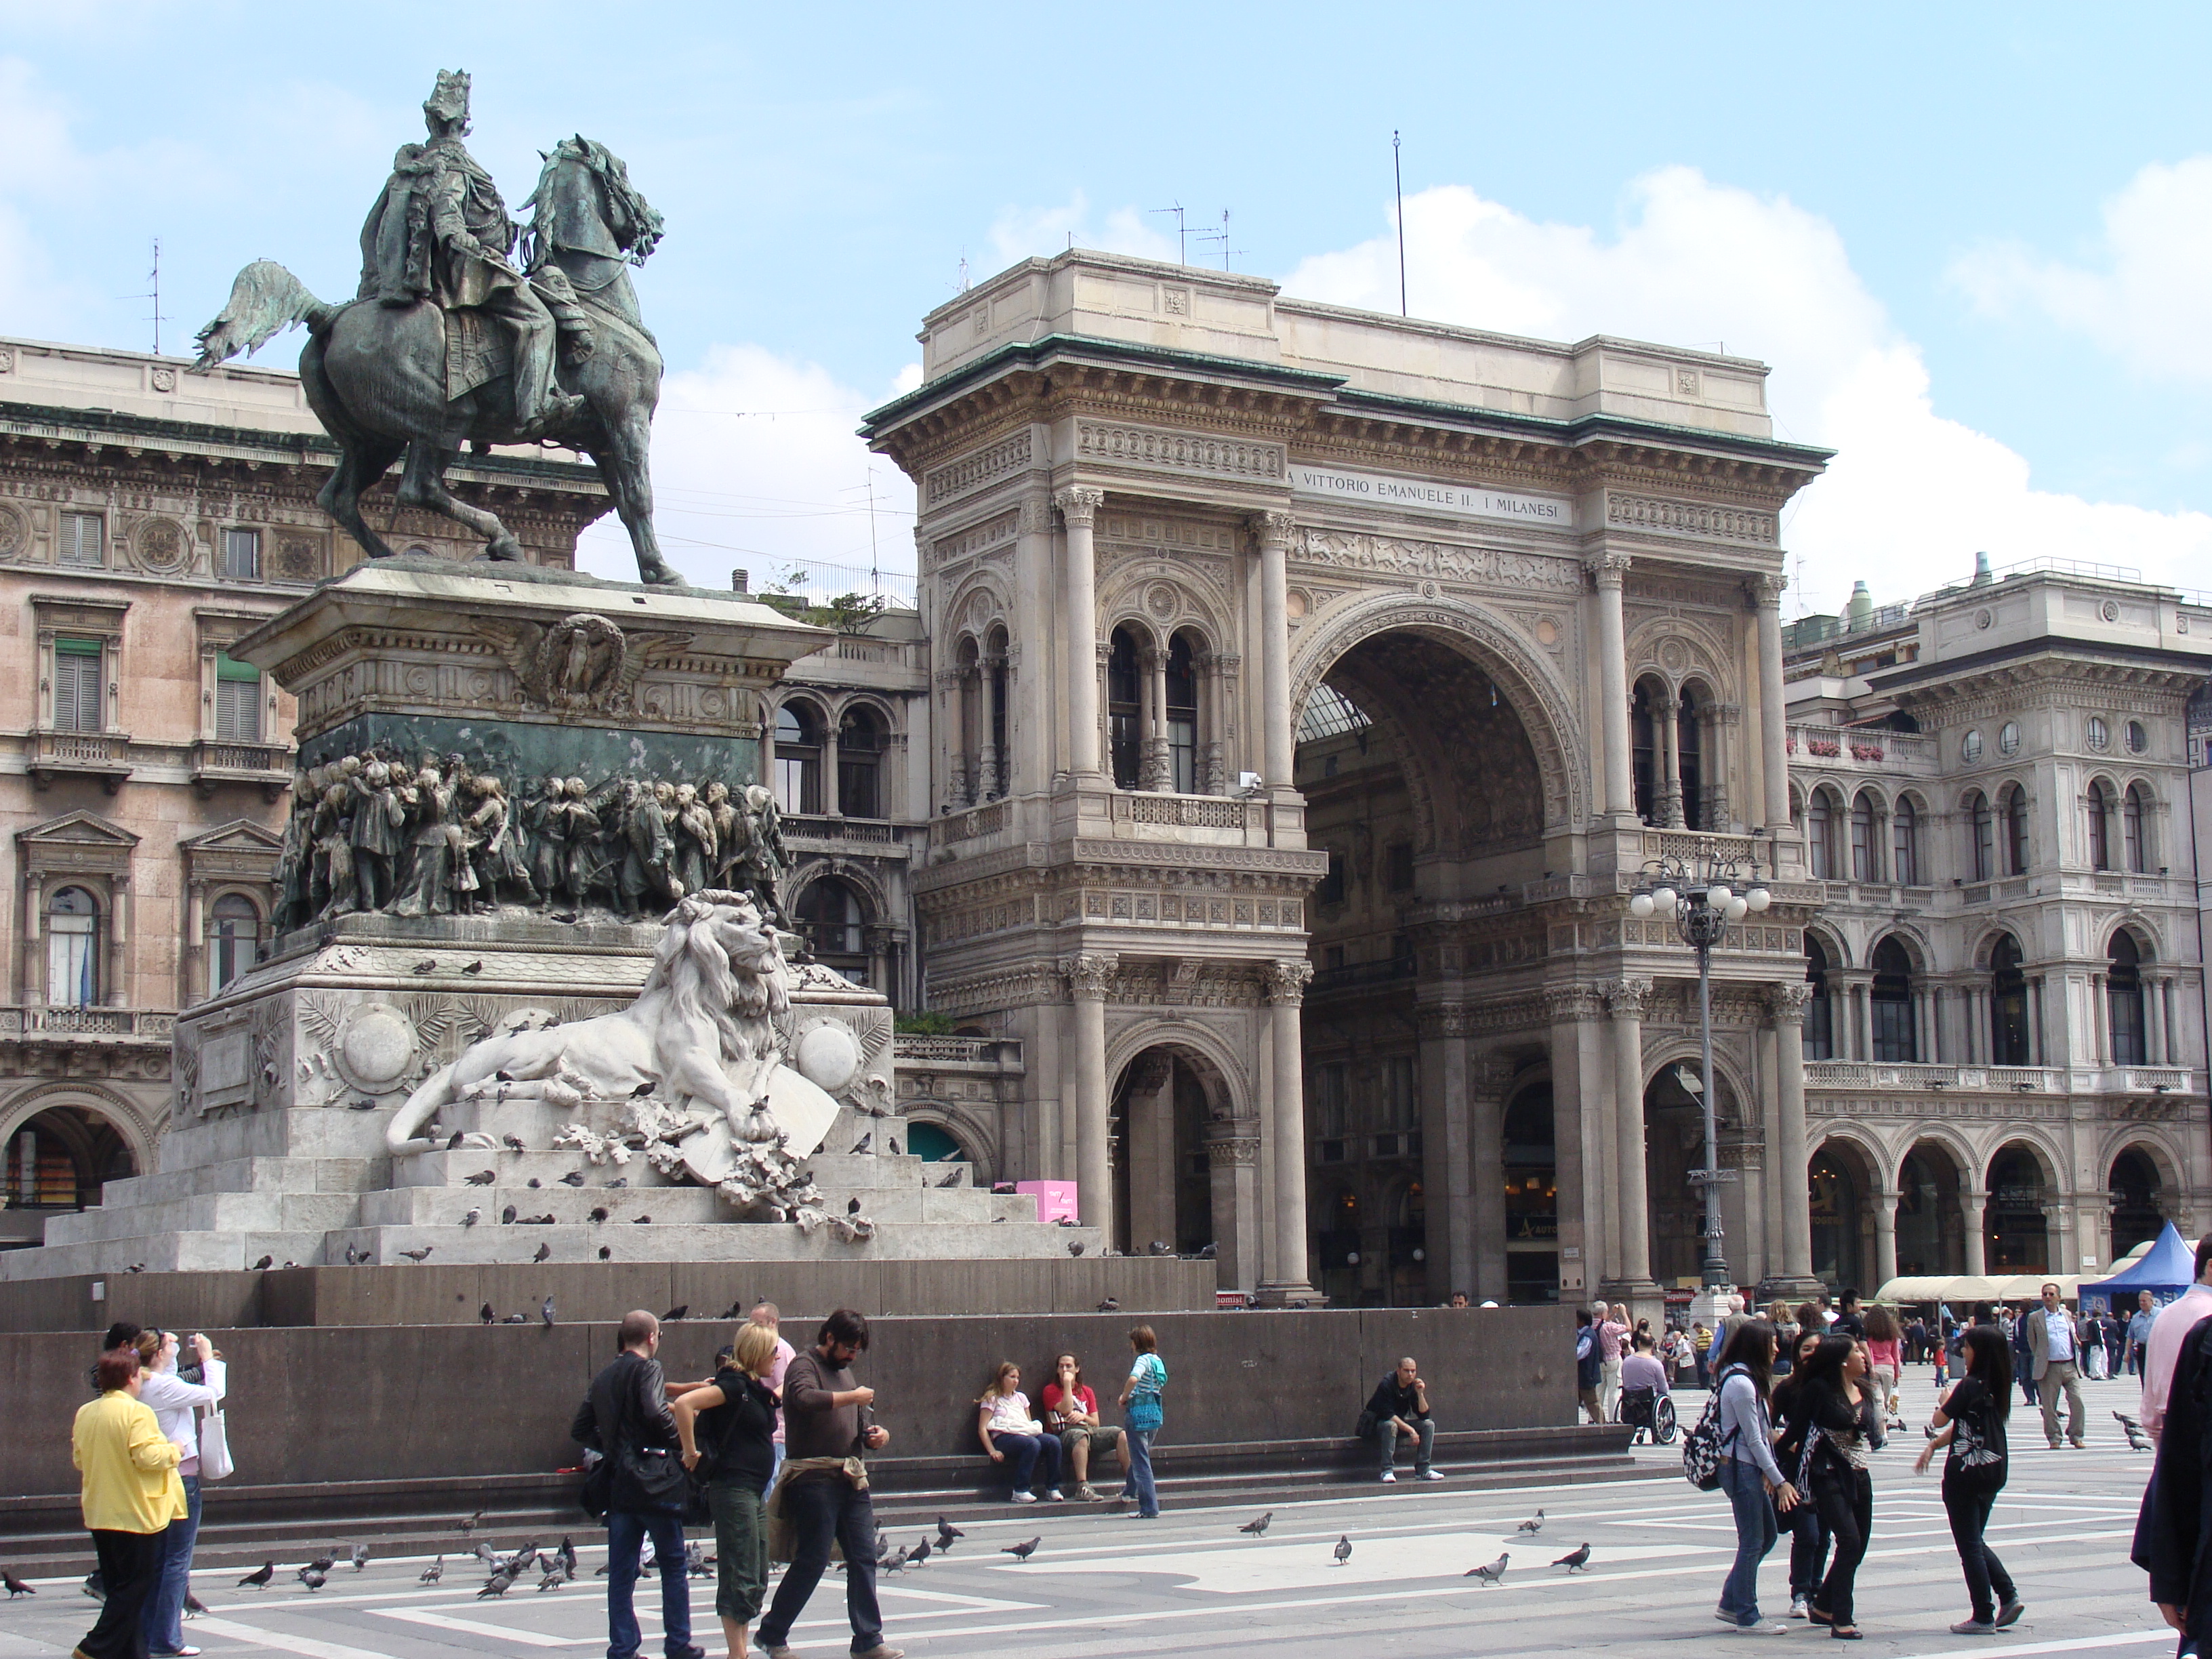 The Monument of Vittorio Emanuel II before the Galleria Vittorio Emanuele